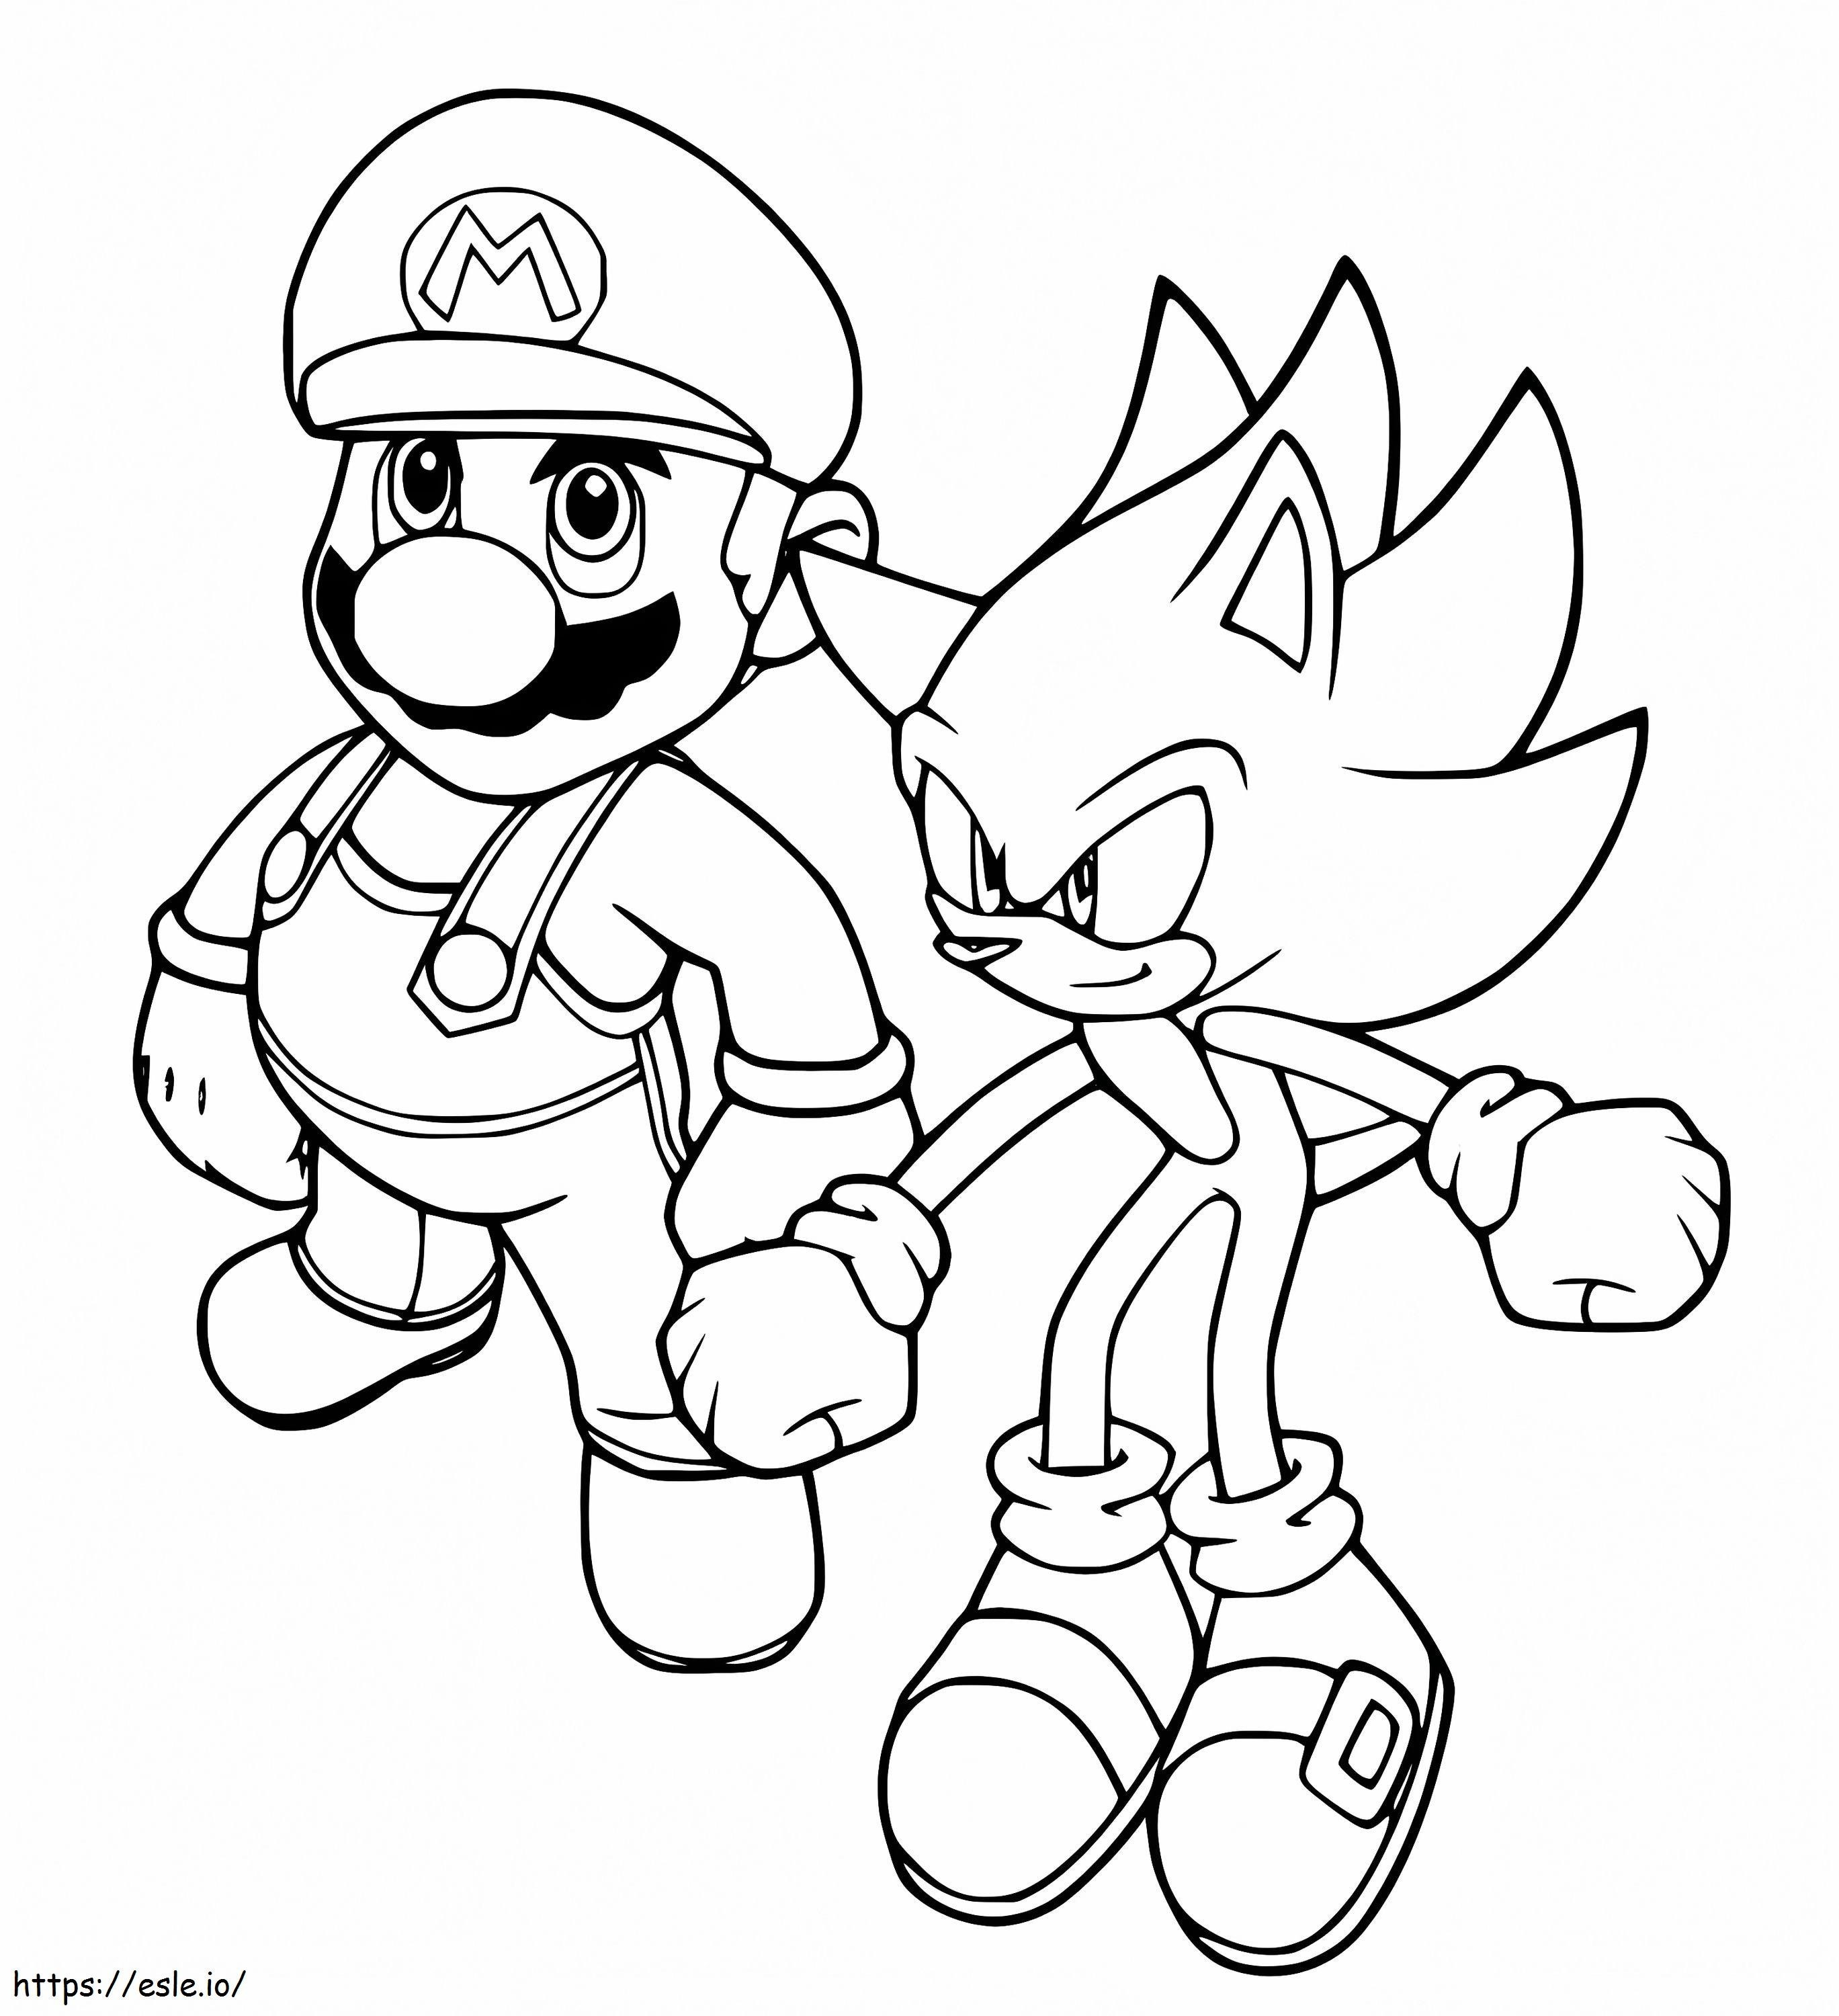 Mario ja Sonic värityskuva